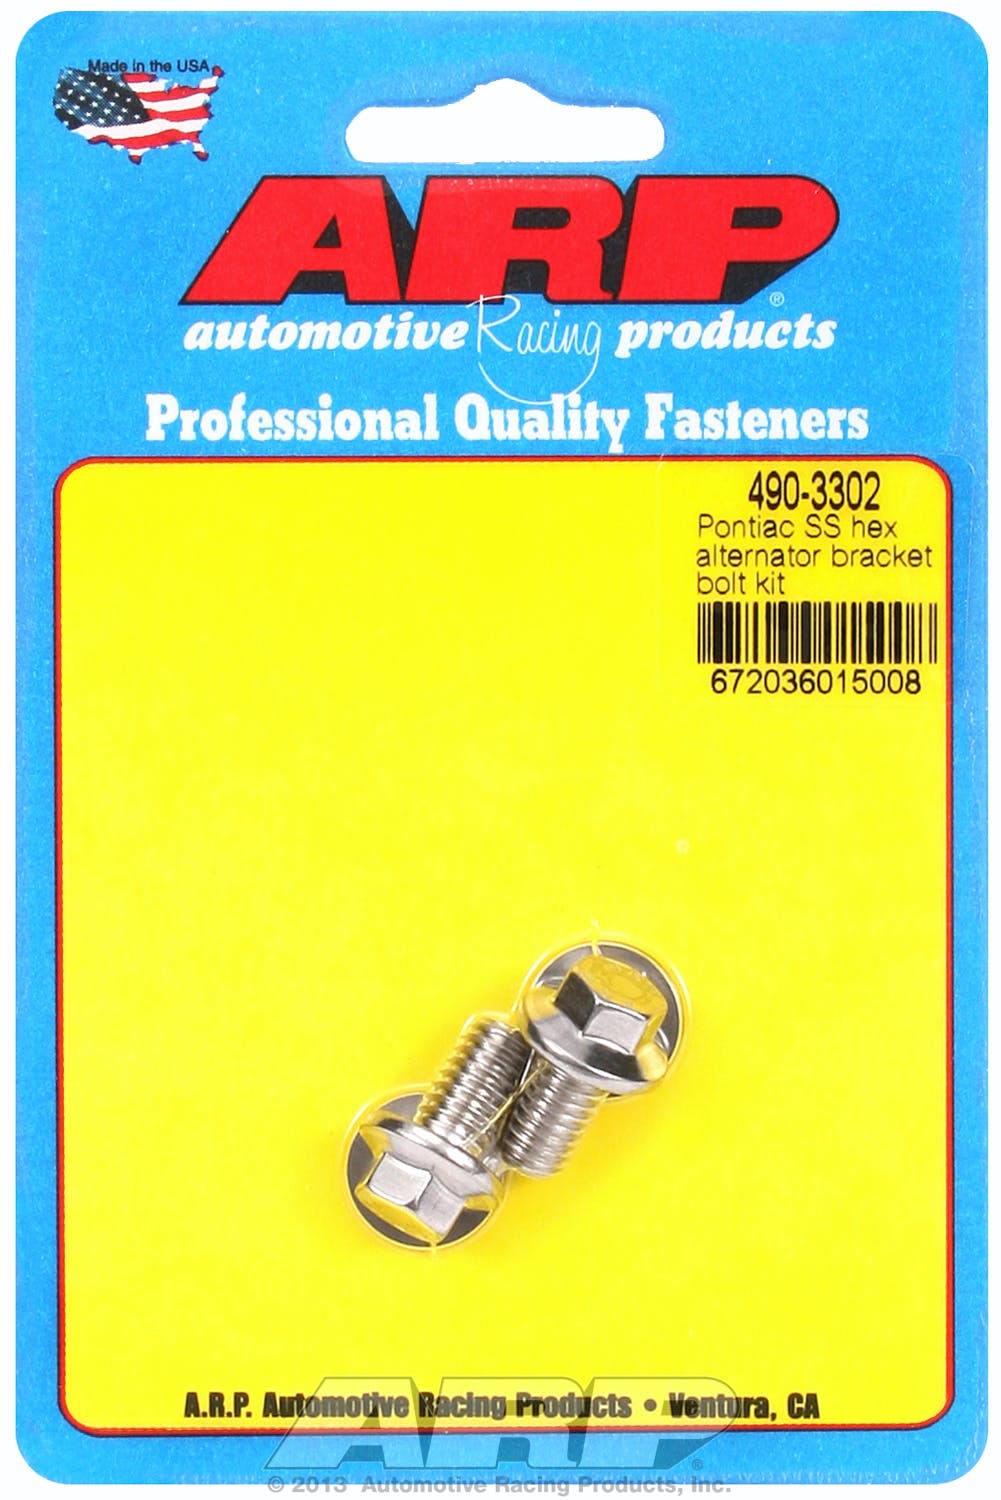 ARP 490-3302 Stainless Steel hex alternator bracket bolt kit